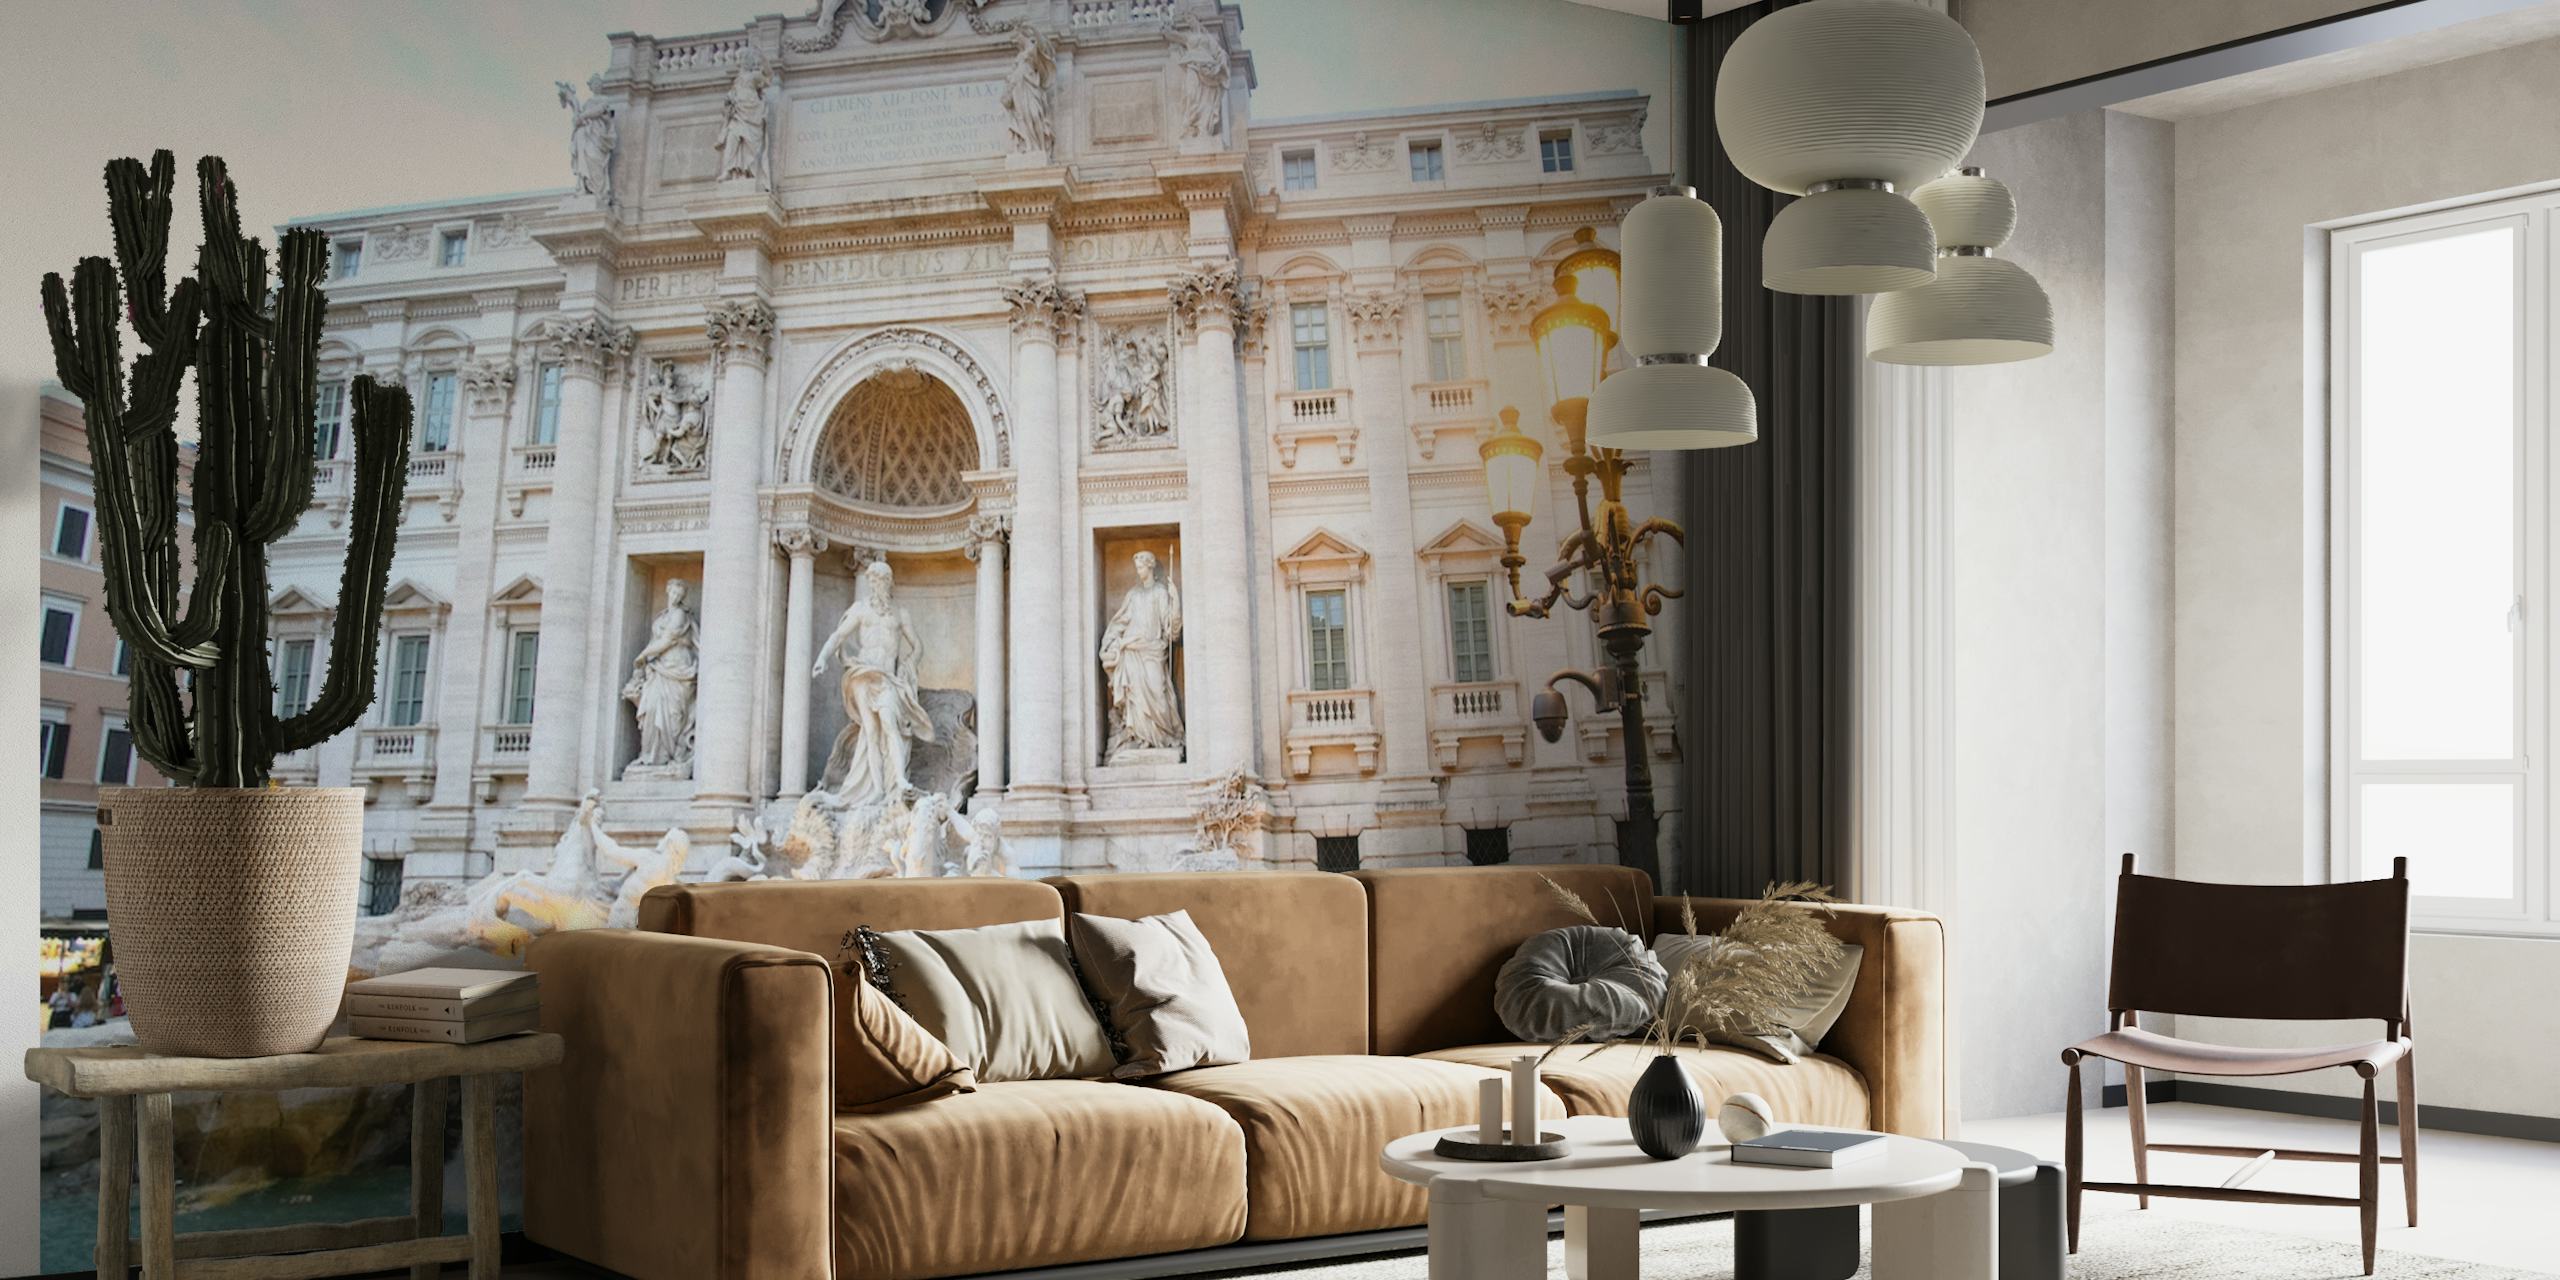 Fototapeta Fontanna di Trevi w Rzymie przedstawiająca ozdobną architekturę i rzeźby